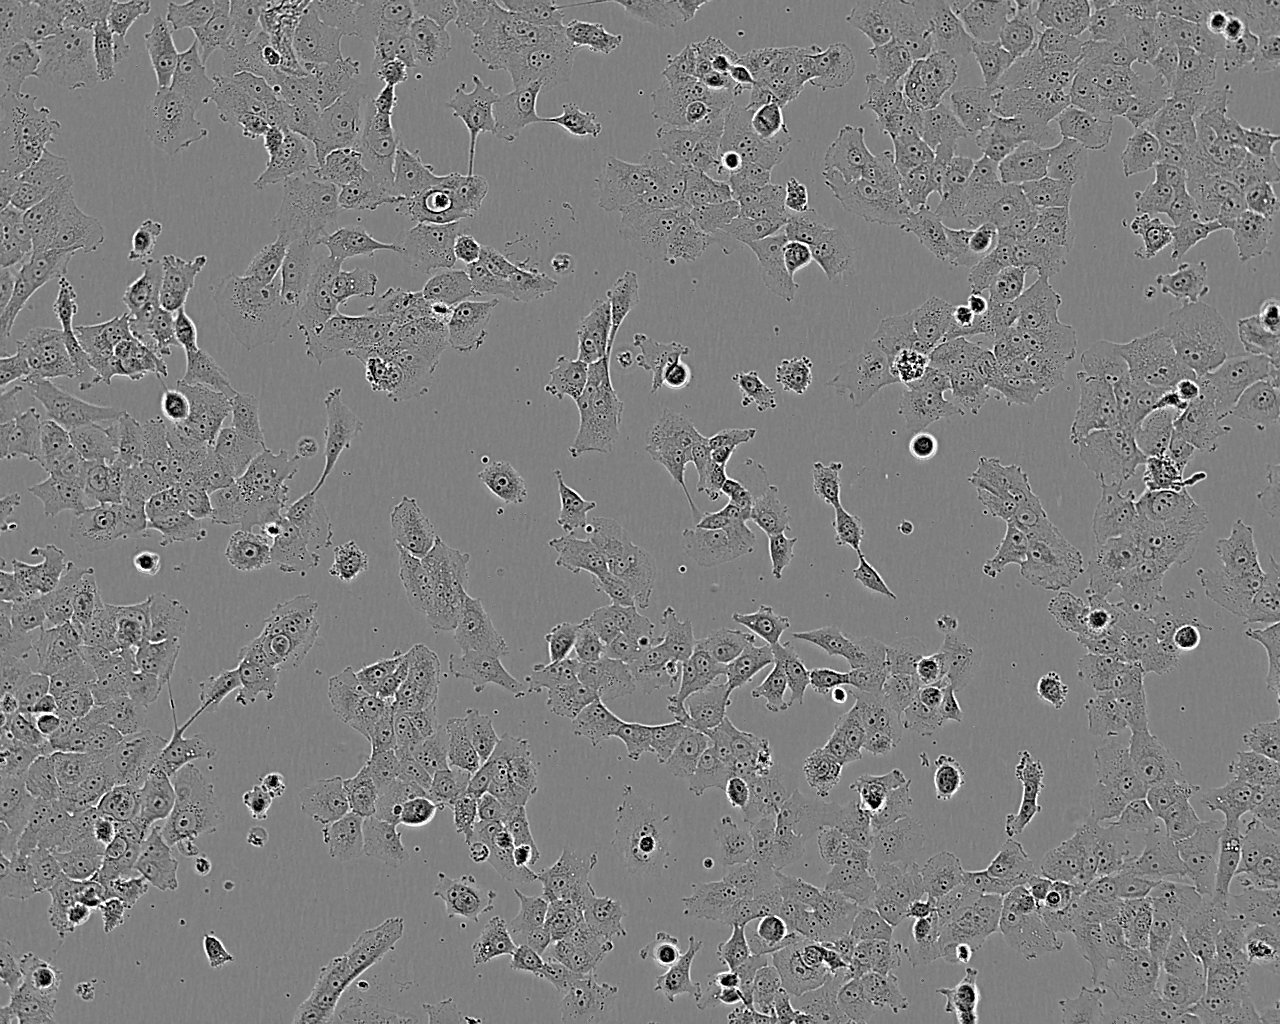 UACC-893 Cell:人乳腺导管癌细胞系